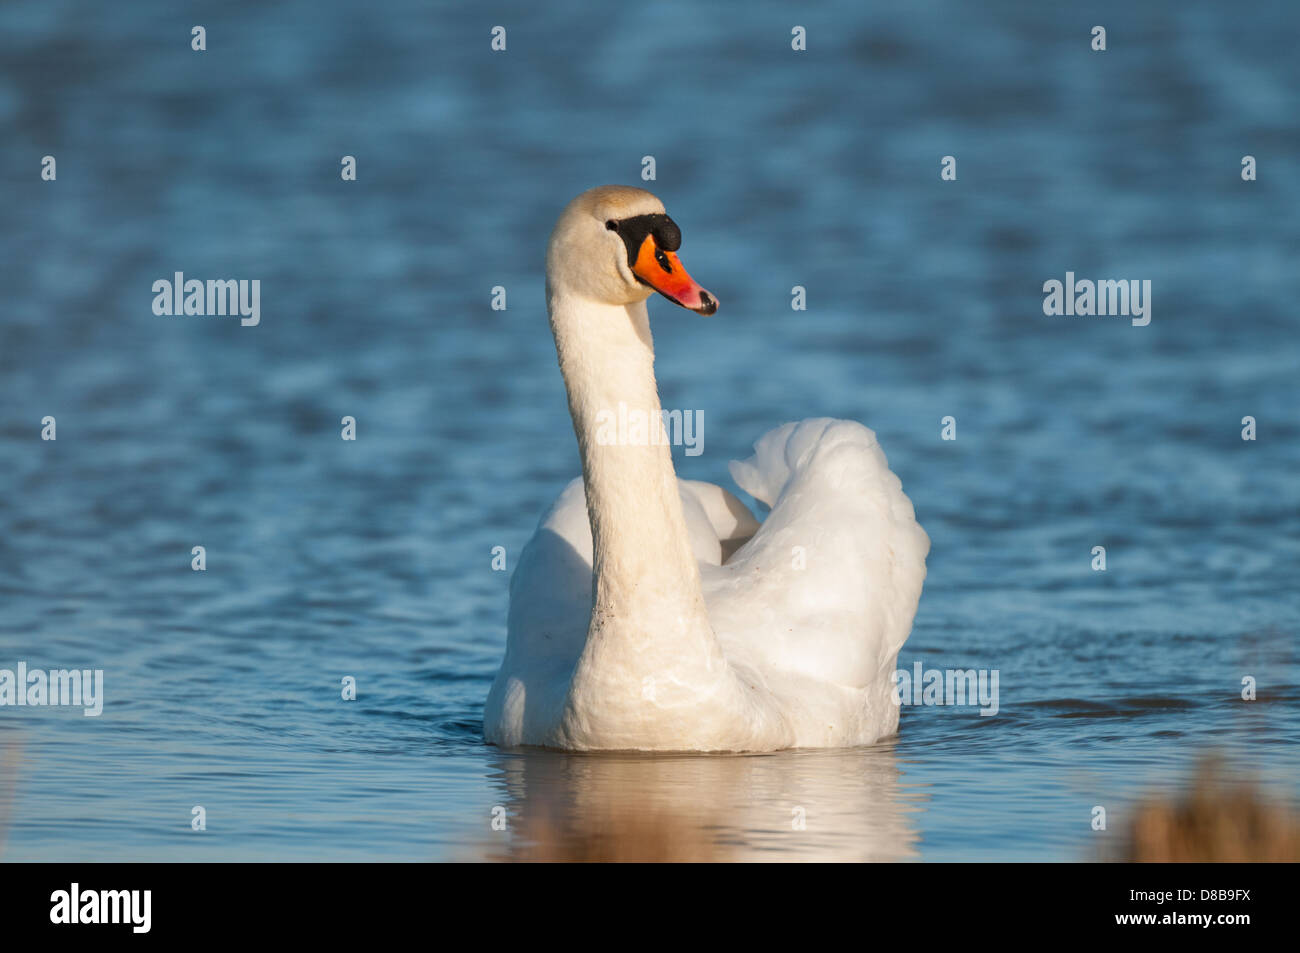 Swimming swan Stock Photo